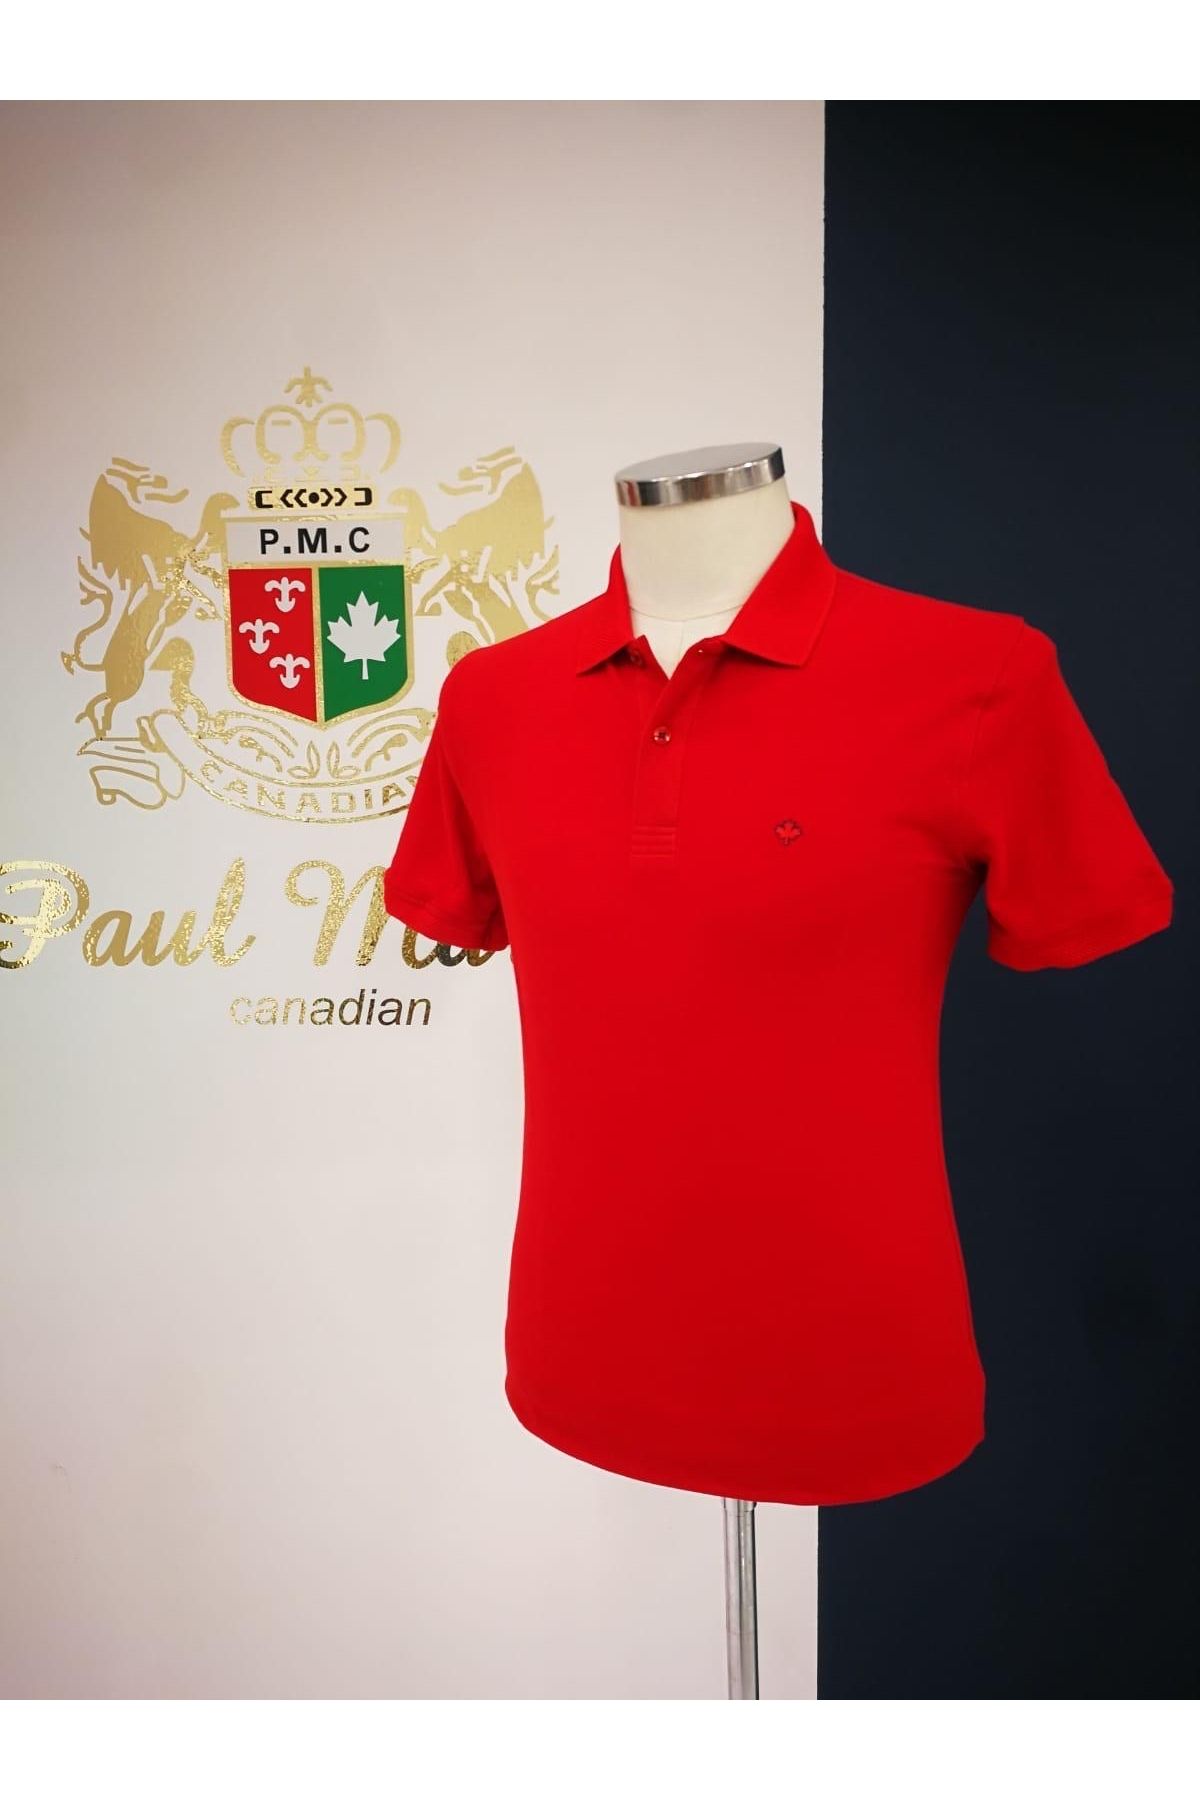 Paul Martin Canadian Polo Yaka T-Shirt